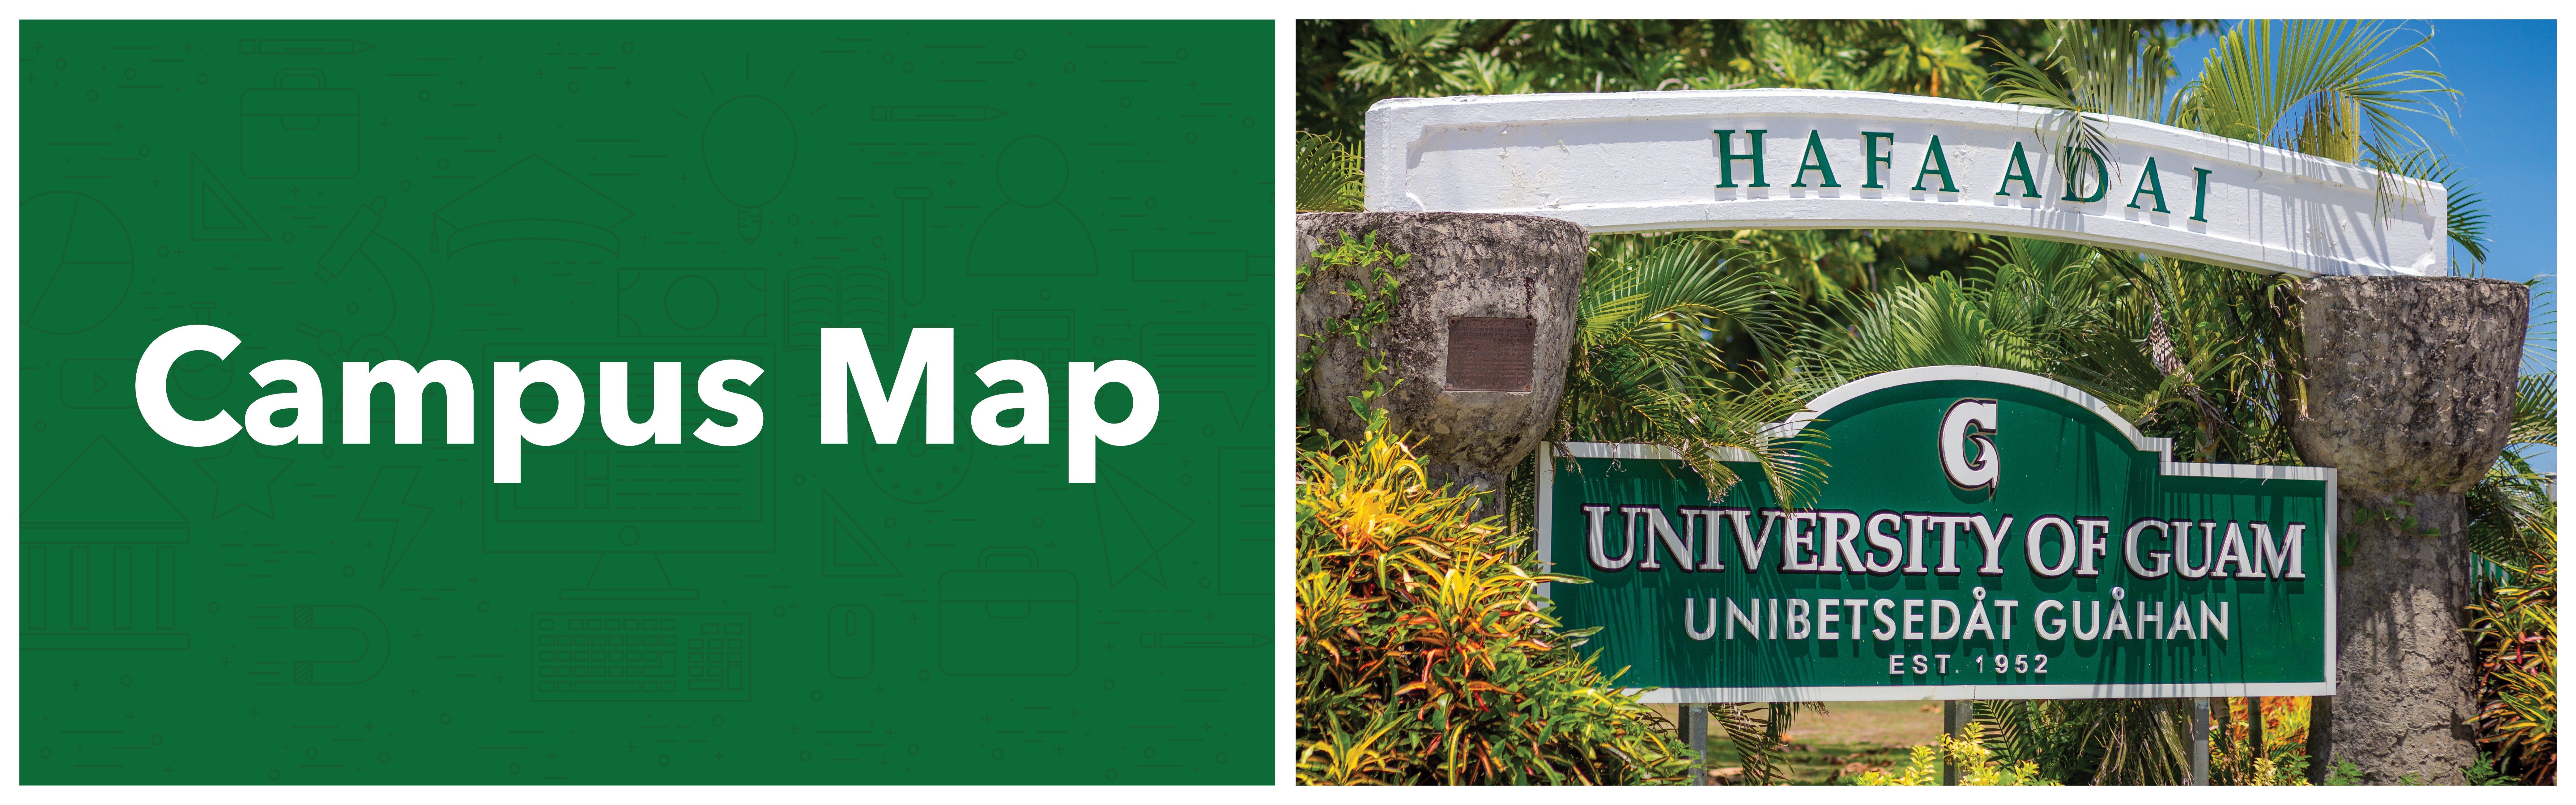  UOG Campus Map Web Banner